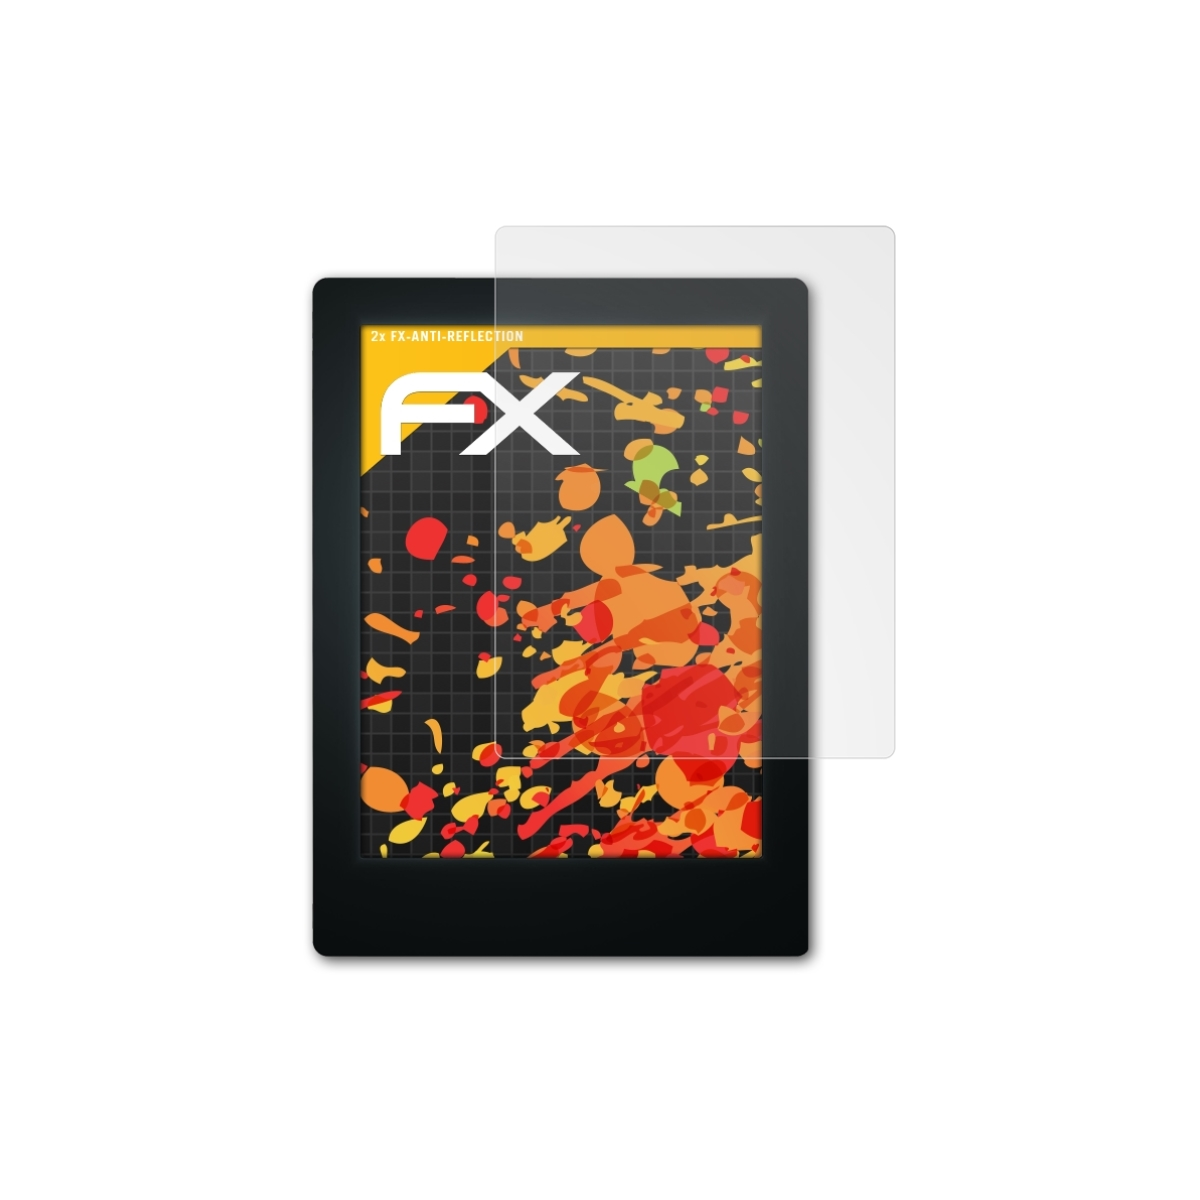 ATFOLIX Displayschutz(für 2x Aura) FX-Antireflex Kobo